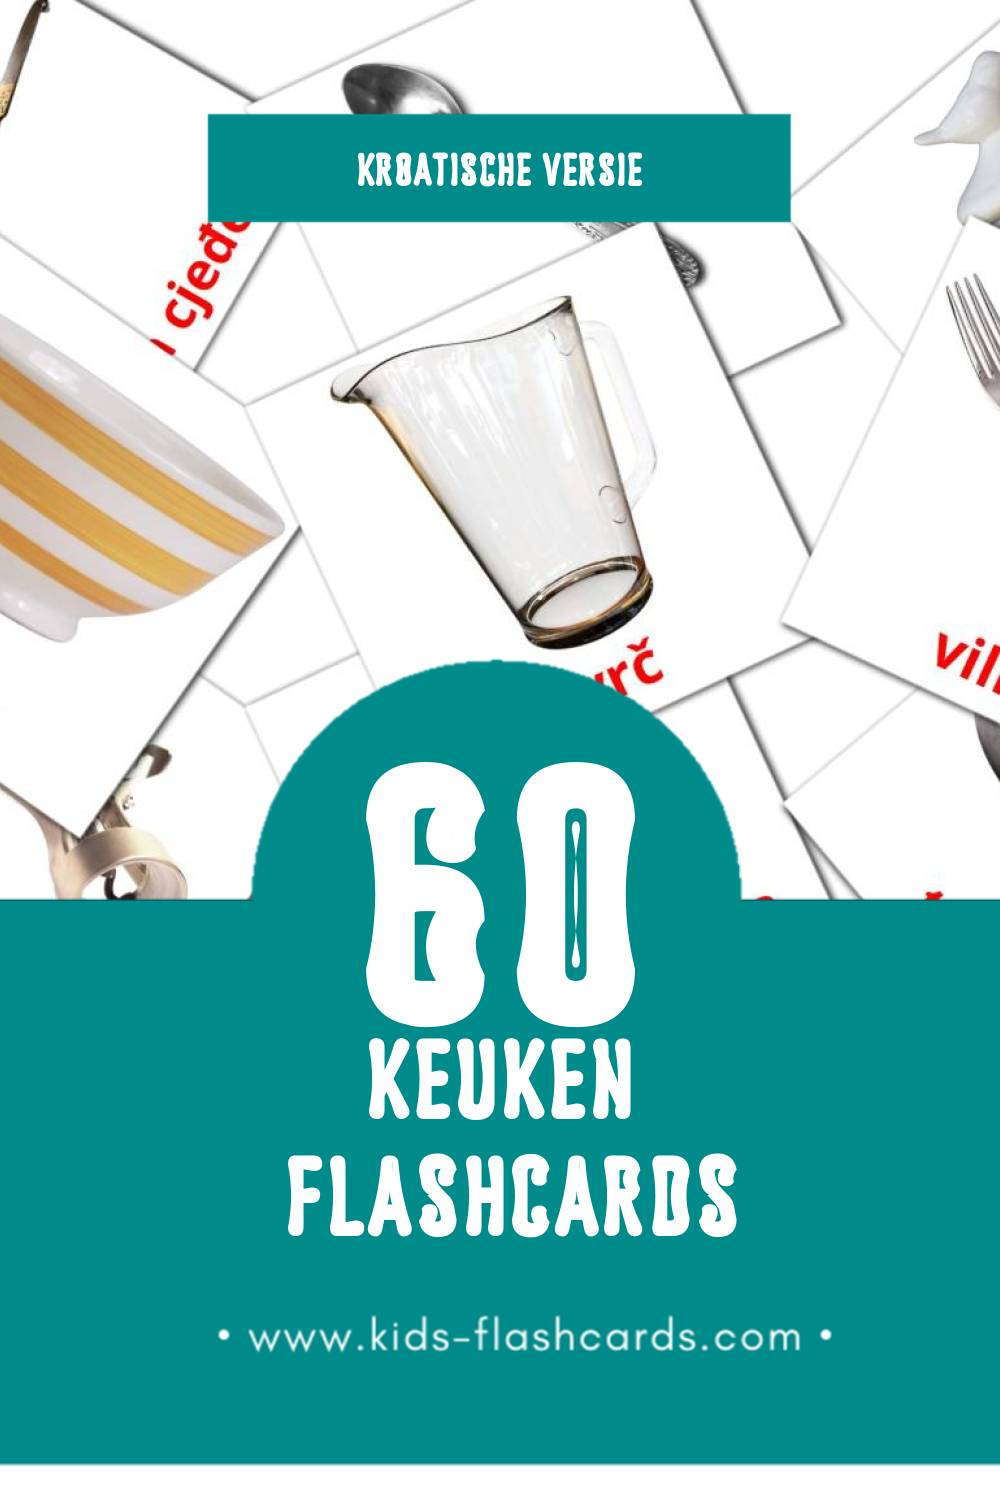 Visuele Kuhinja Flashcards voor Kleuters (60 kaarten in het Kroatisch)